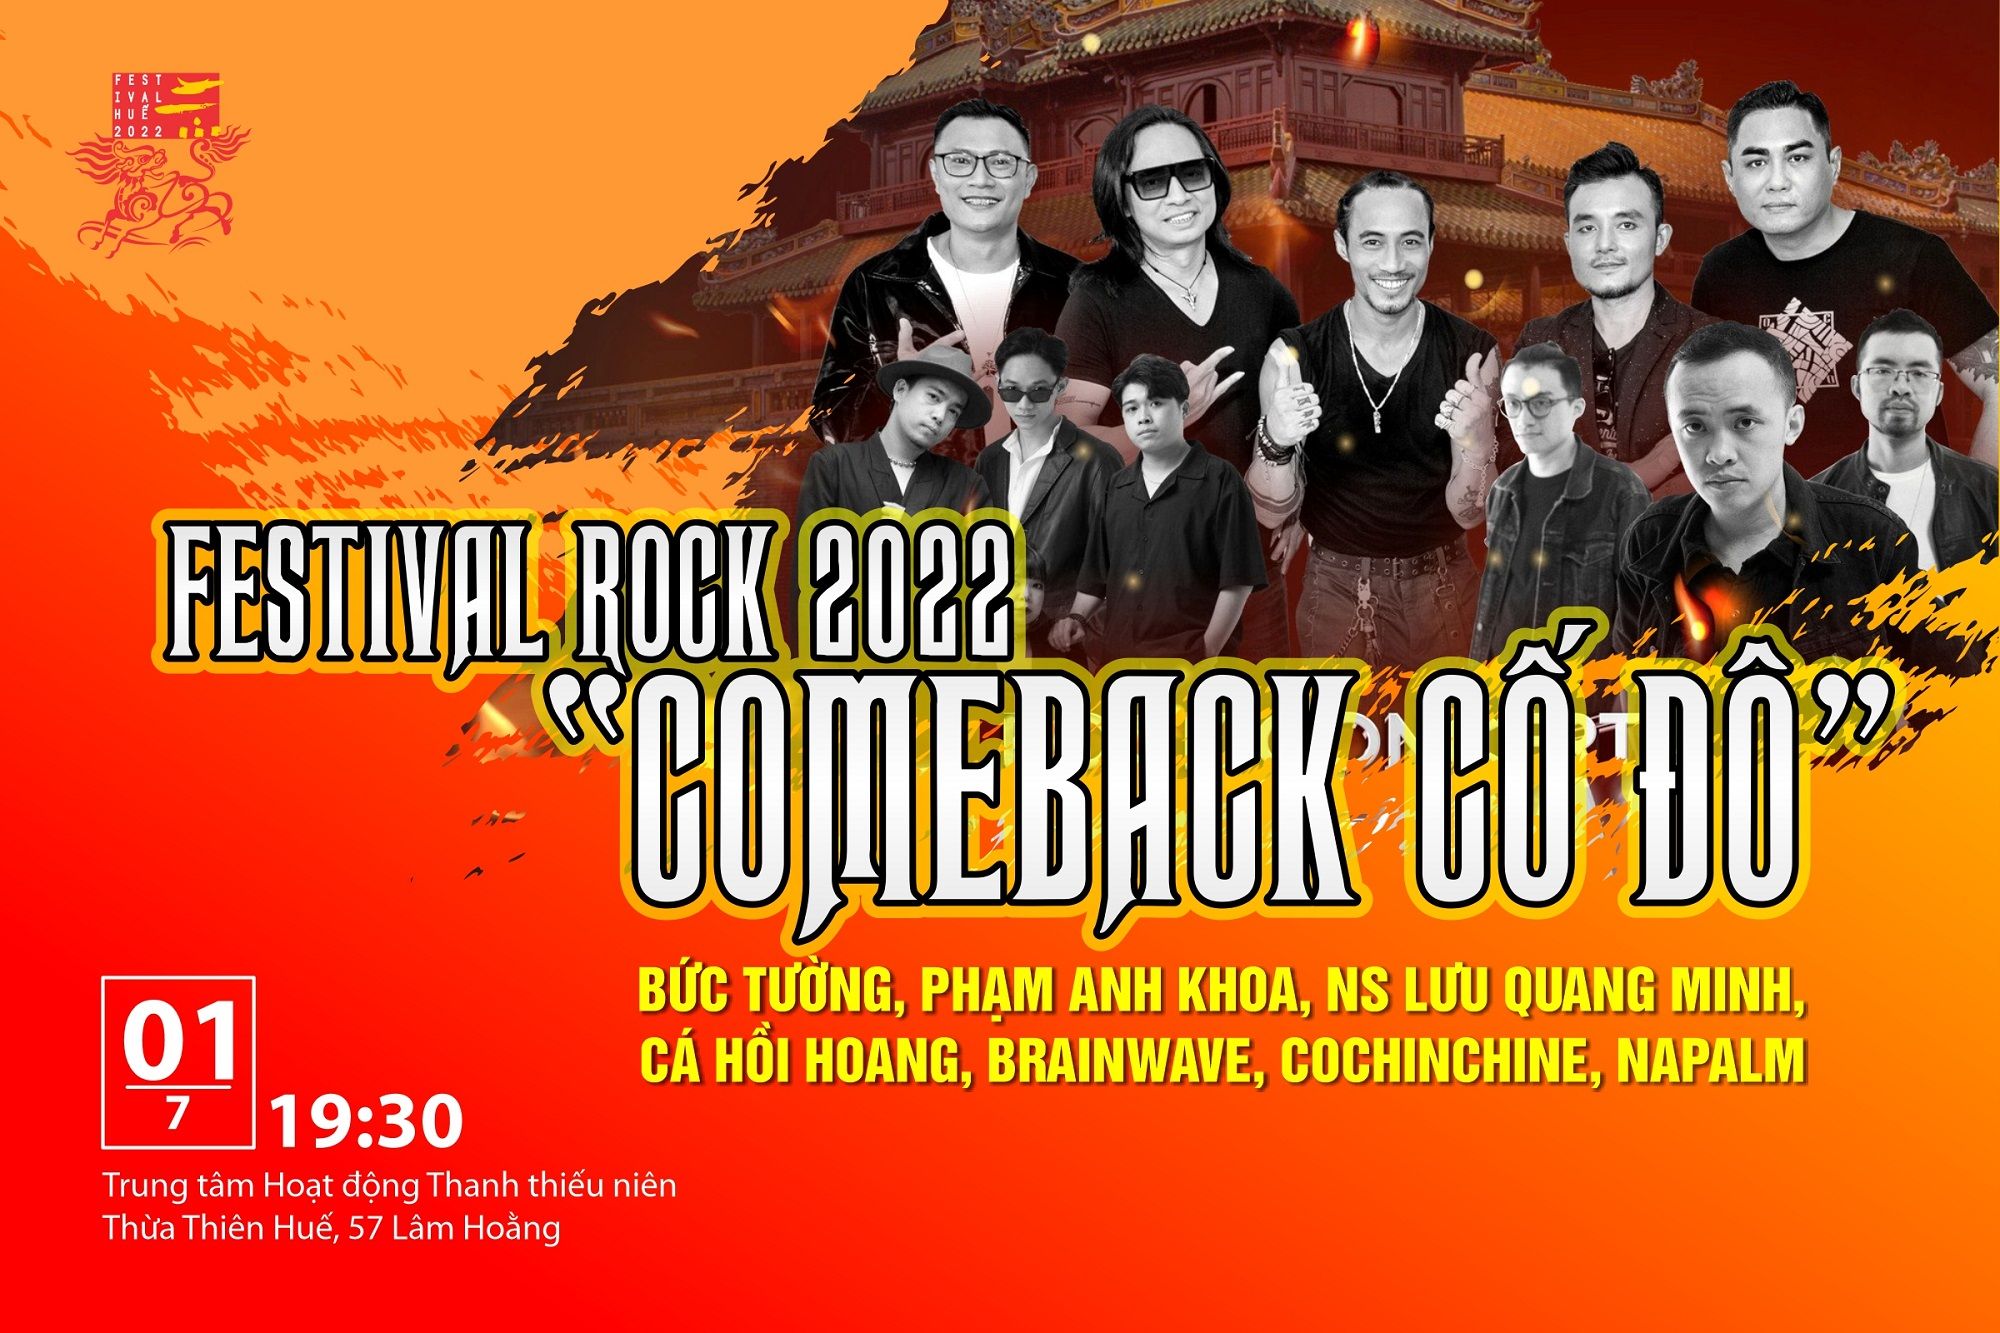 [Tuần lễ Festival Huế 2022]  “Quẩy” cùng Rock Show “Comeback Cố Đô” 2022